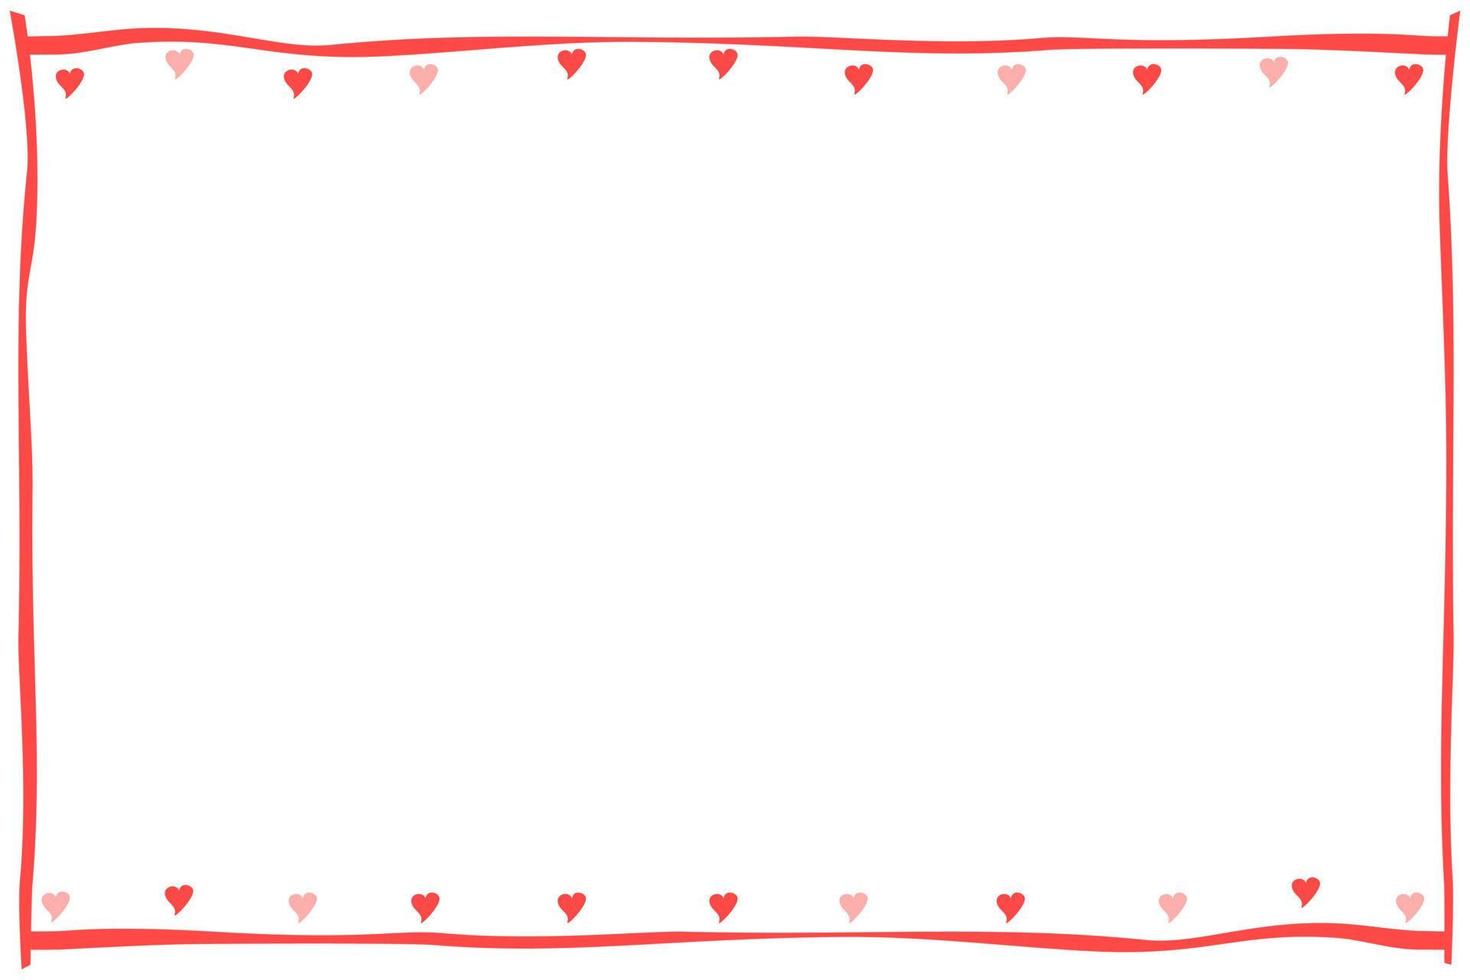 vetor - borda de linha vermelha ou moldura com mini corações vermelhos em fundo branco. pode ser usado para qualquer cartão, web, etiqueta, banner ou brochura. copie o espaço para qualquer design de texto. dia dos namorados.